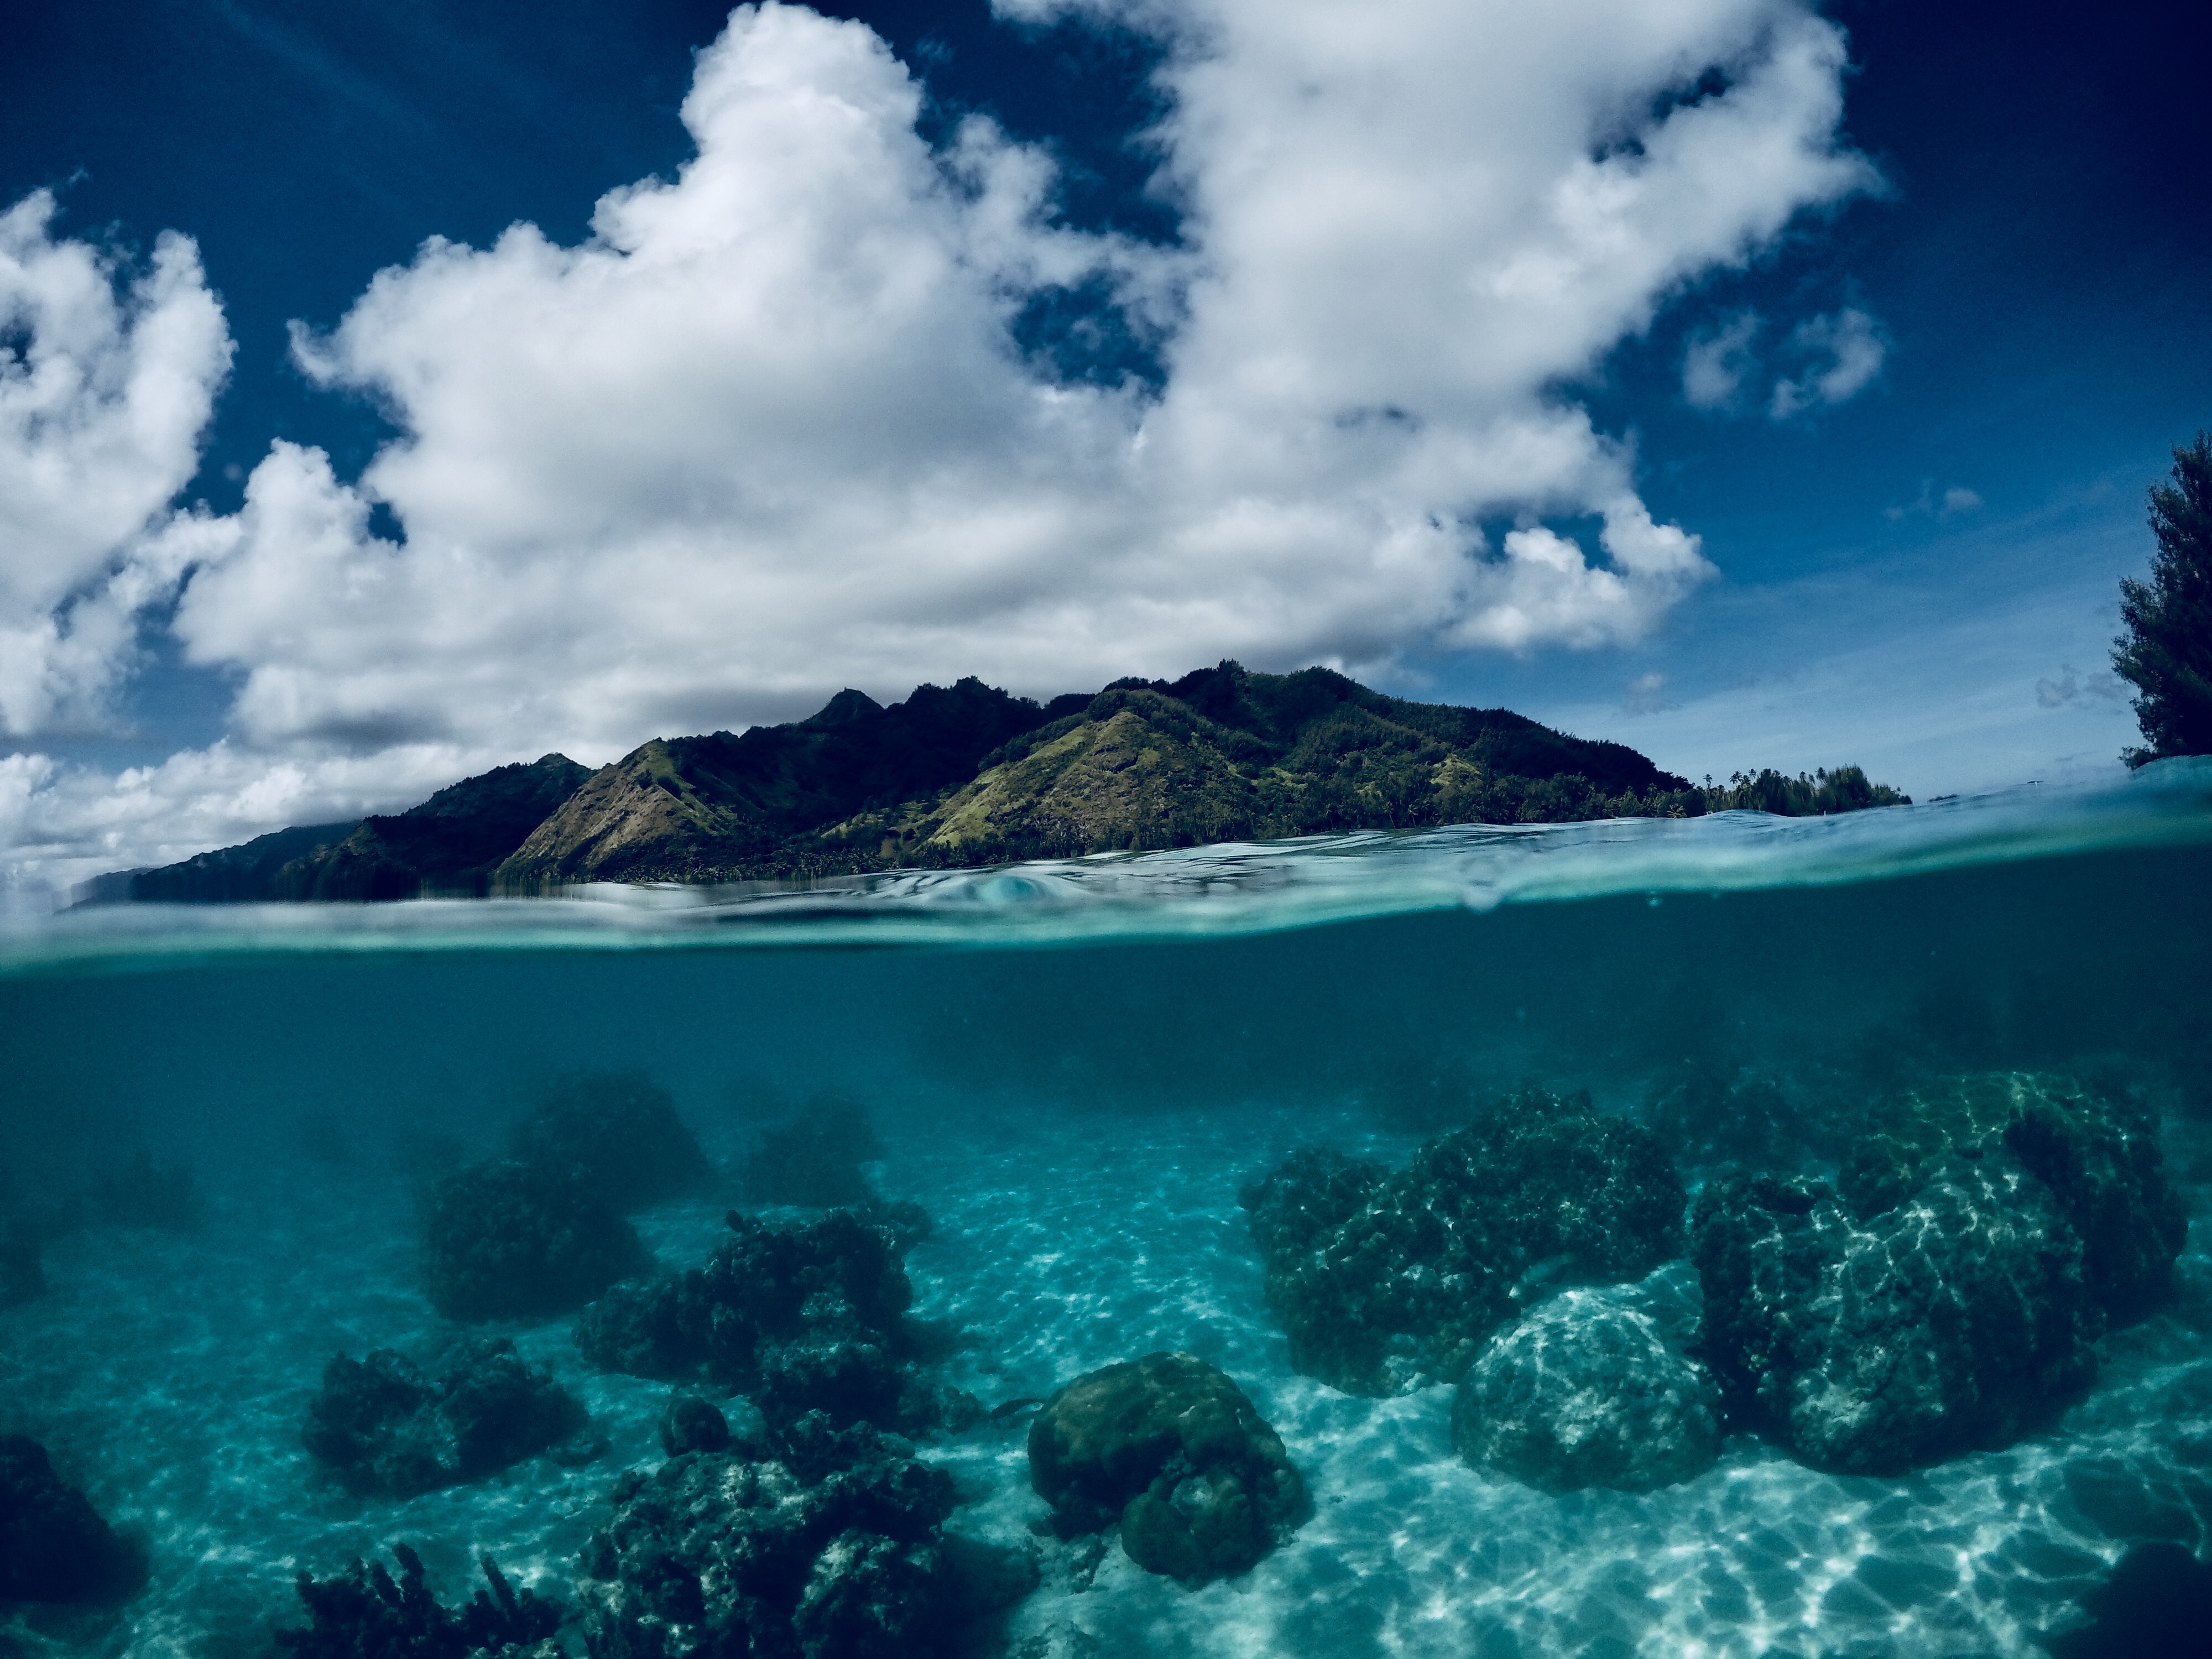     Des barrières artificielles de corail pour lutter contre les ouragans 

